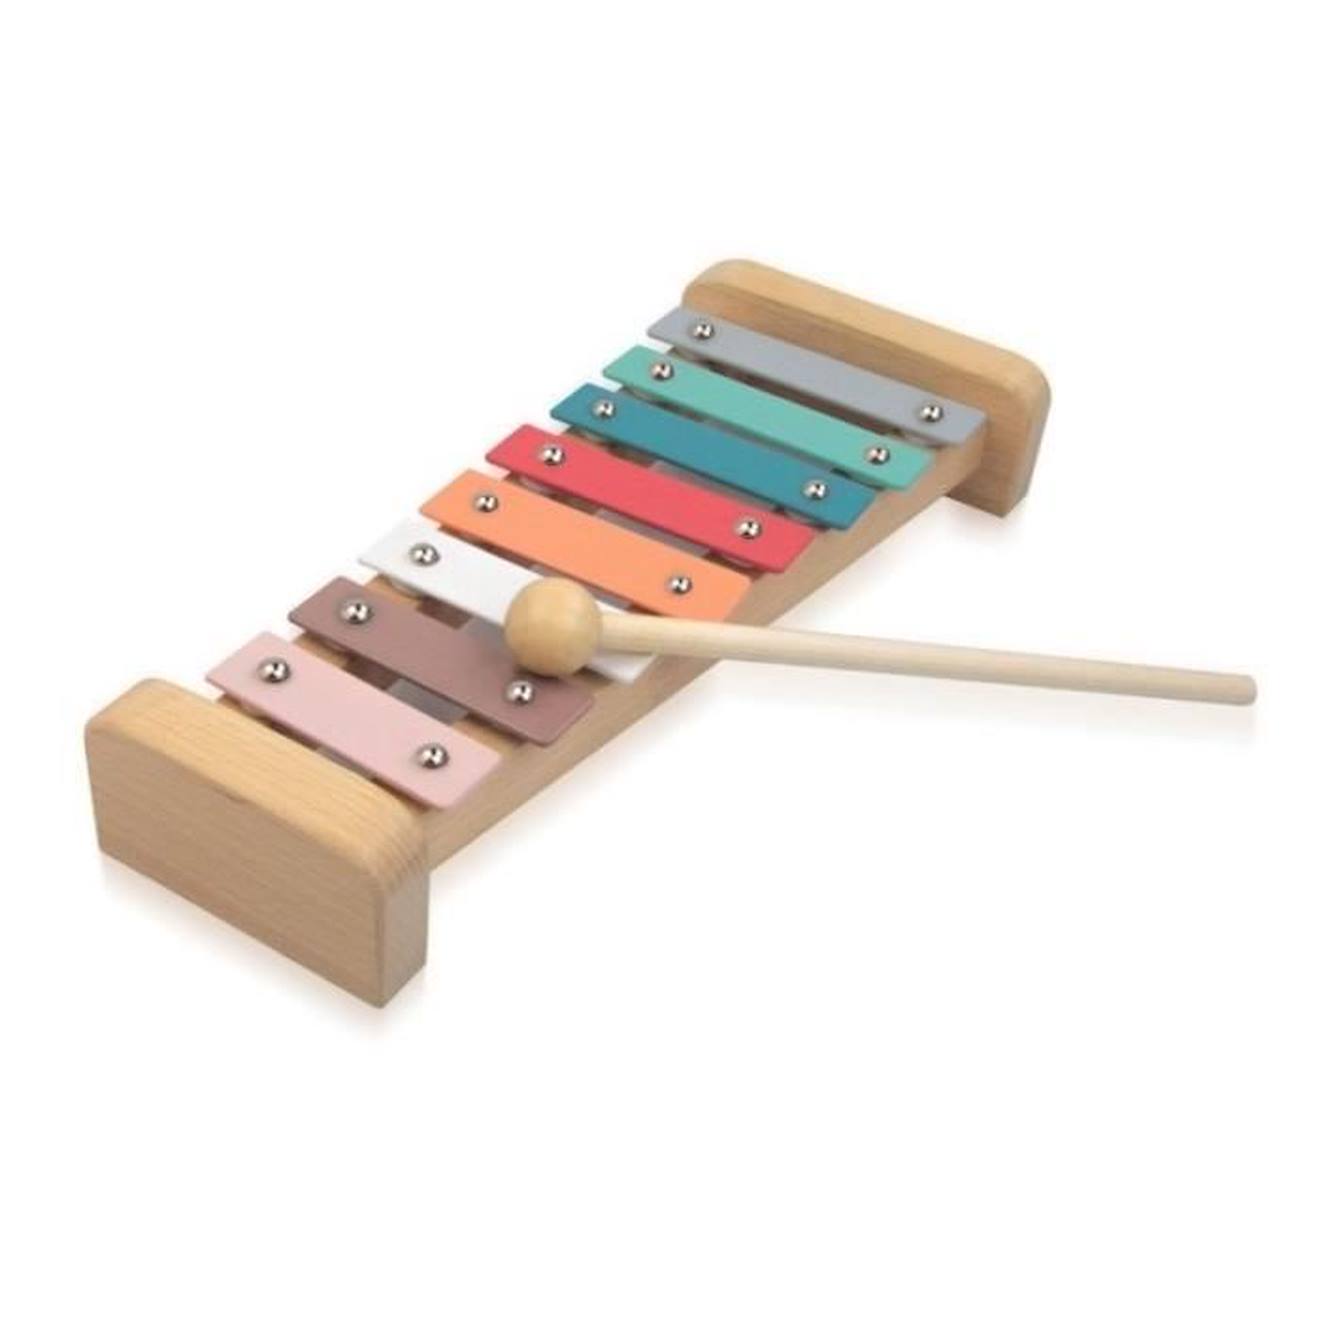 Xylophone en bois pour enfant personnalisé - Pois multicolores